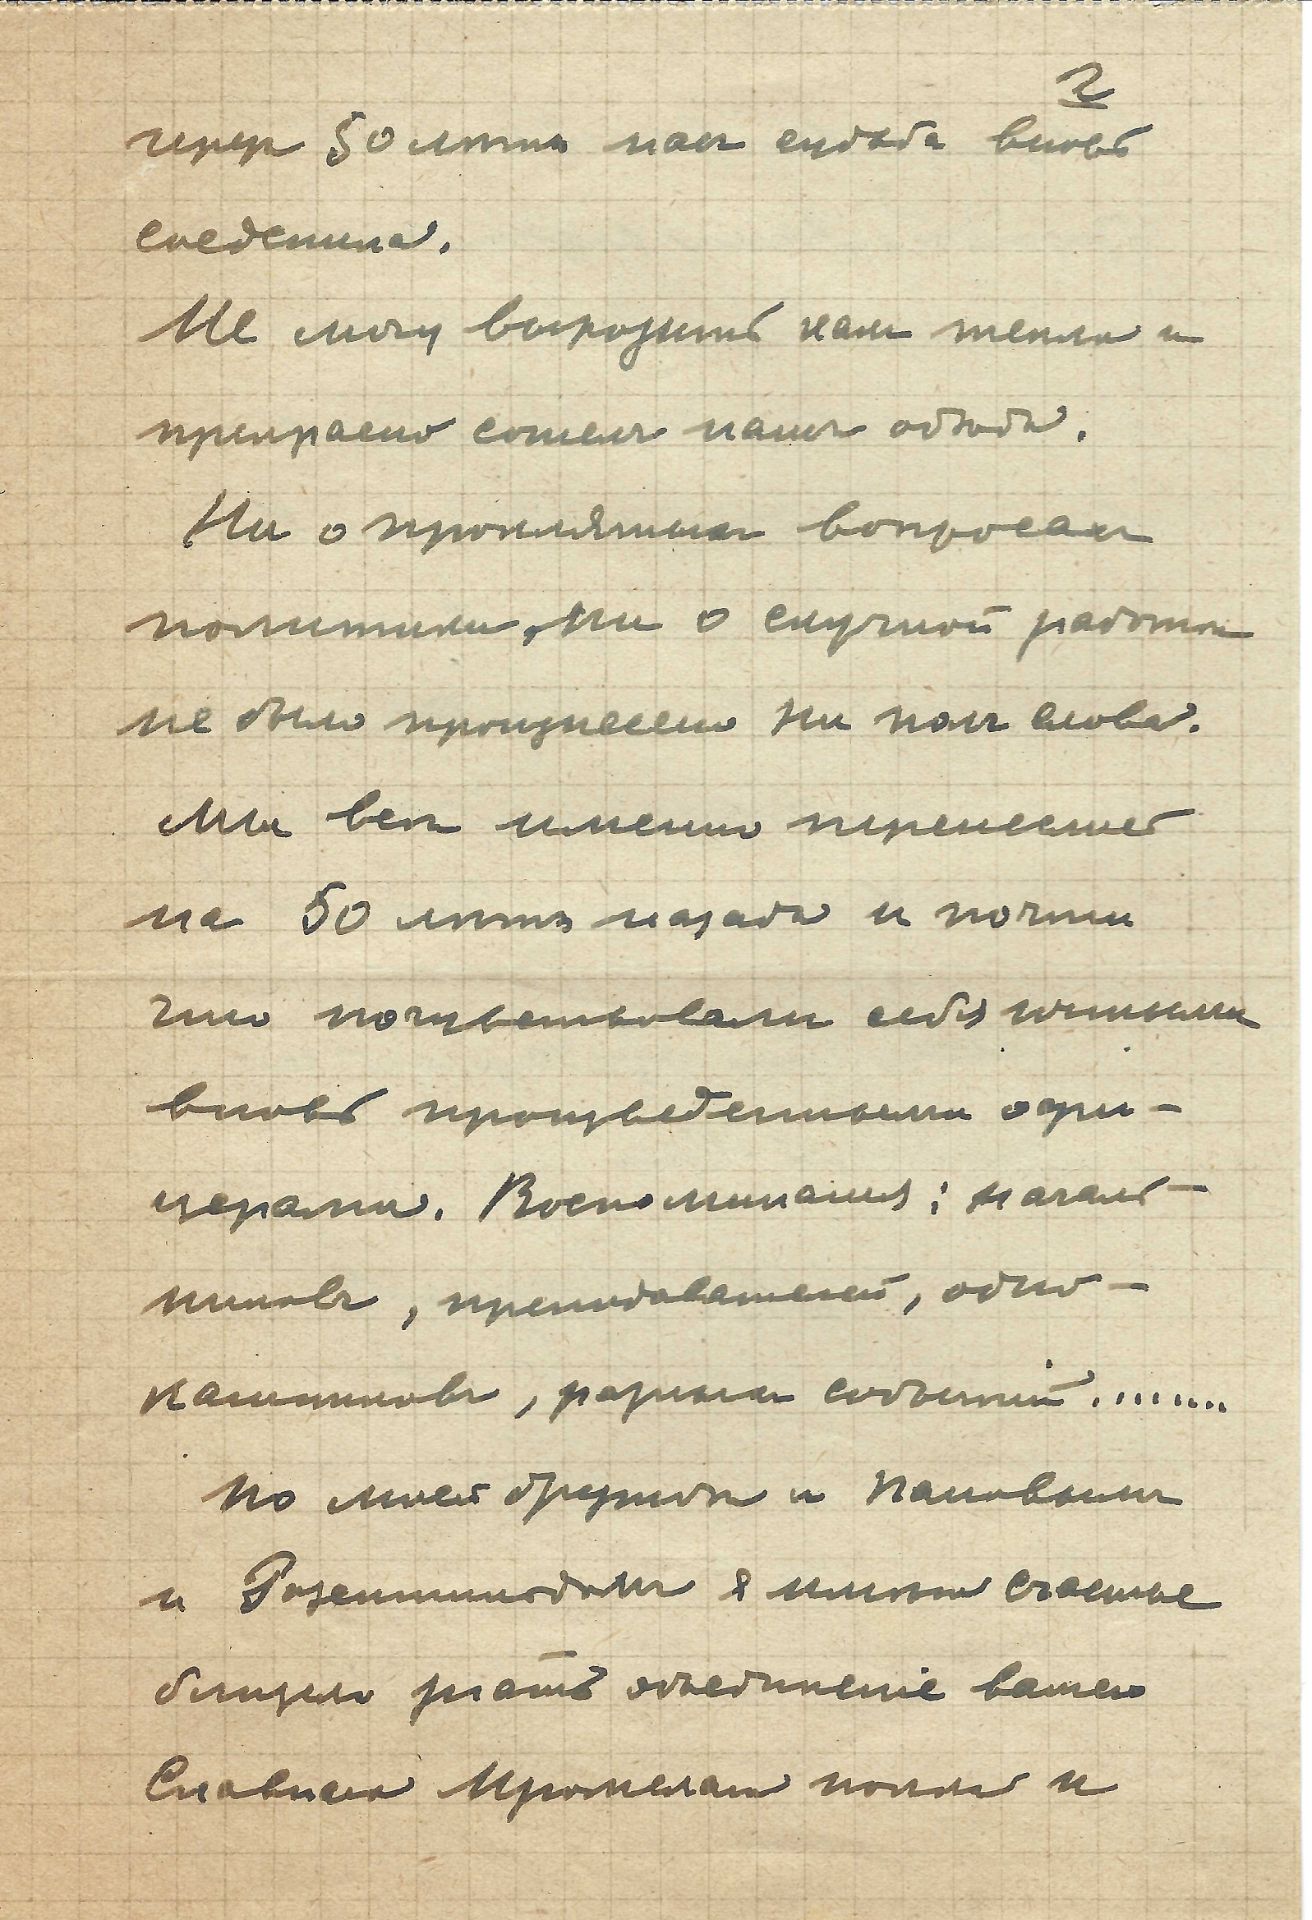 ARCHIVES d’Andreï BALASHOV (1889-1969) • Correspondances avec A.Efremov (1878-1964) en France, V. - Image 6 of 39